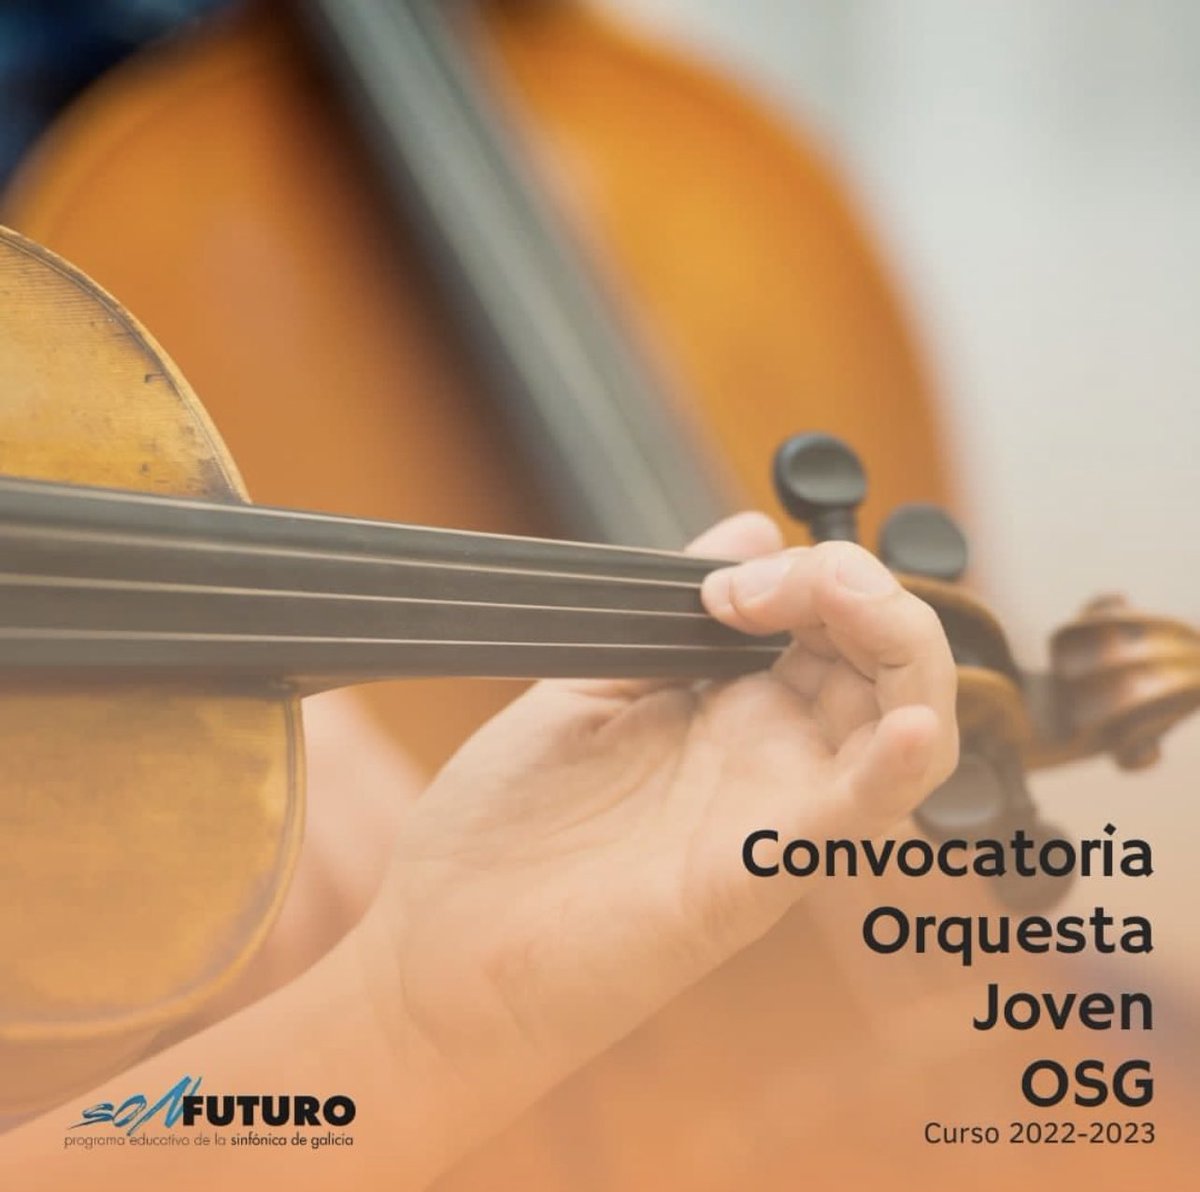 Últimas horas para presentarte a las pruebas de la Orquesta Joven de la Sinfónica de Galicia. Toda la información en el blog de @SONFUTURO 👇🏻👇🏻👇🏻👇🏻👇🏻 bit.ly/convocatoriaoj…